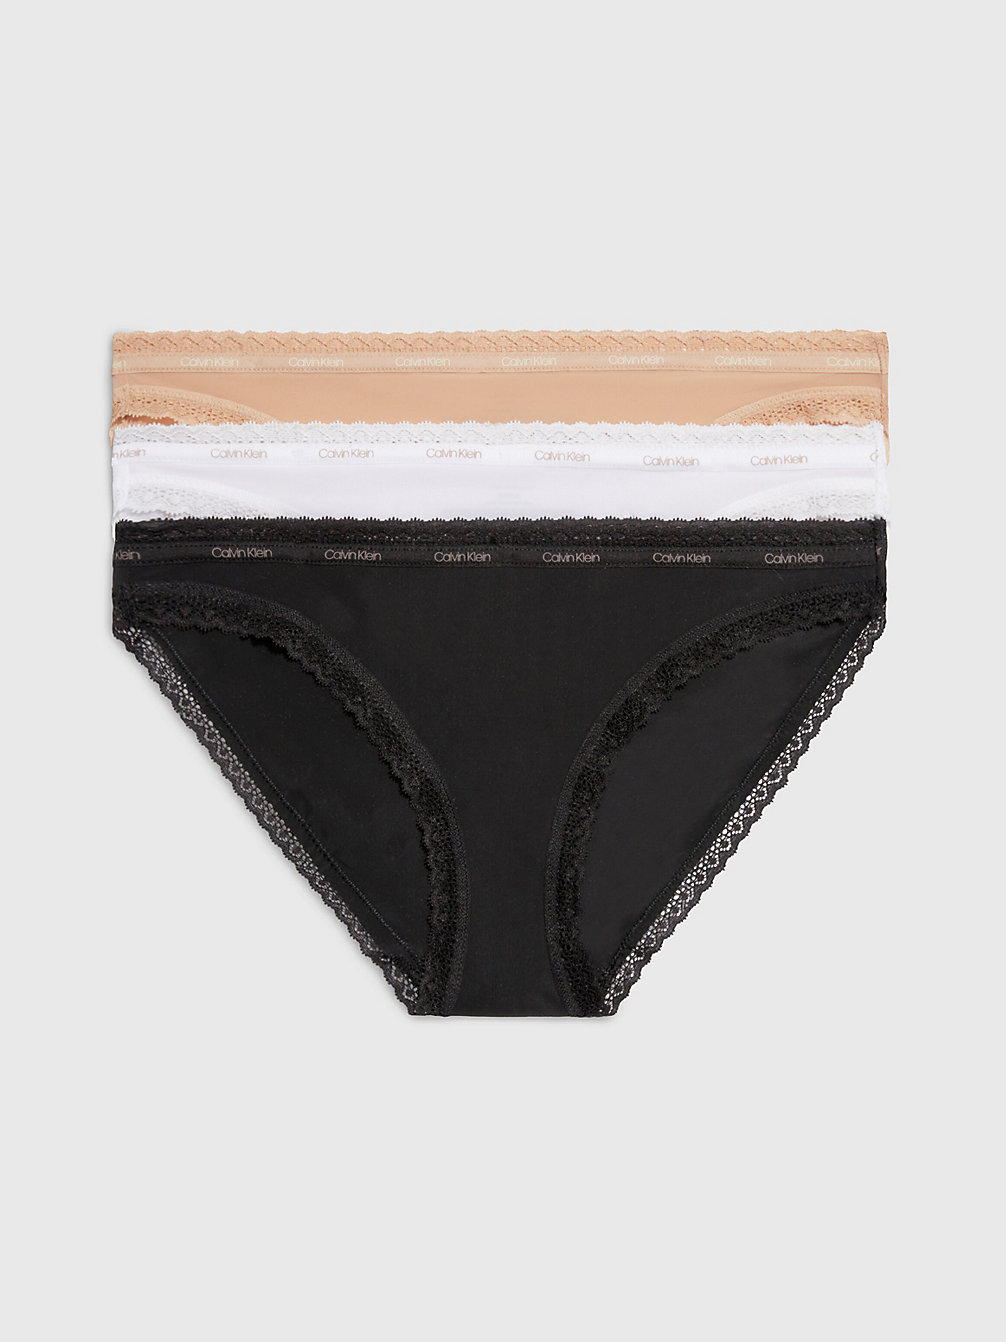 BLACK/WHITE/HONEY ALMOND 3-Pack Slips - Bottoms Up undefined dames Calvin Klein